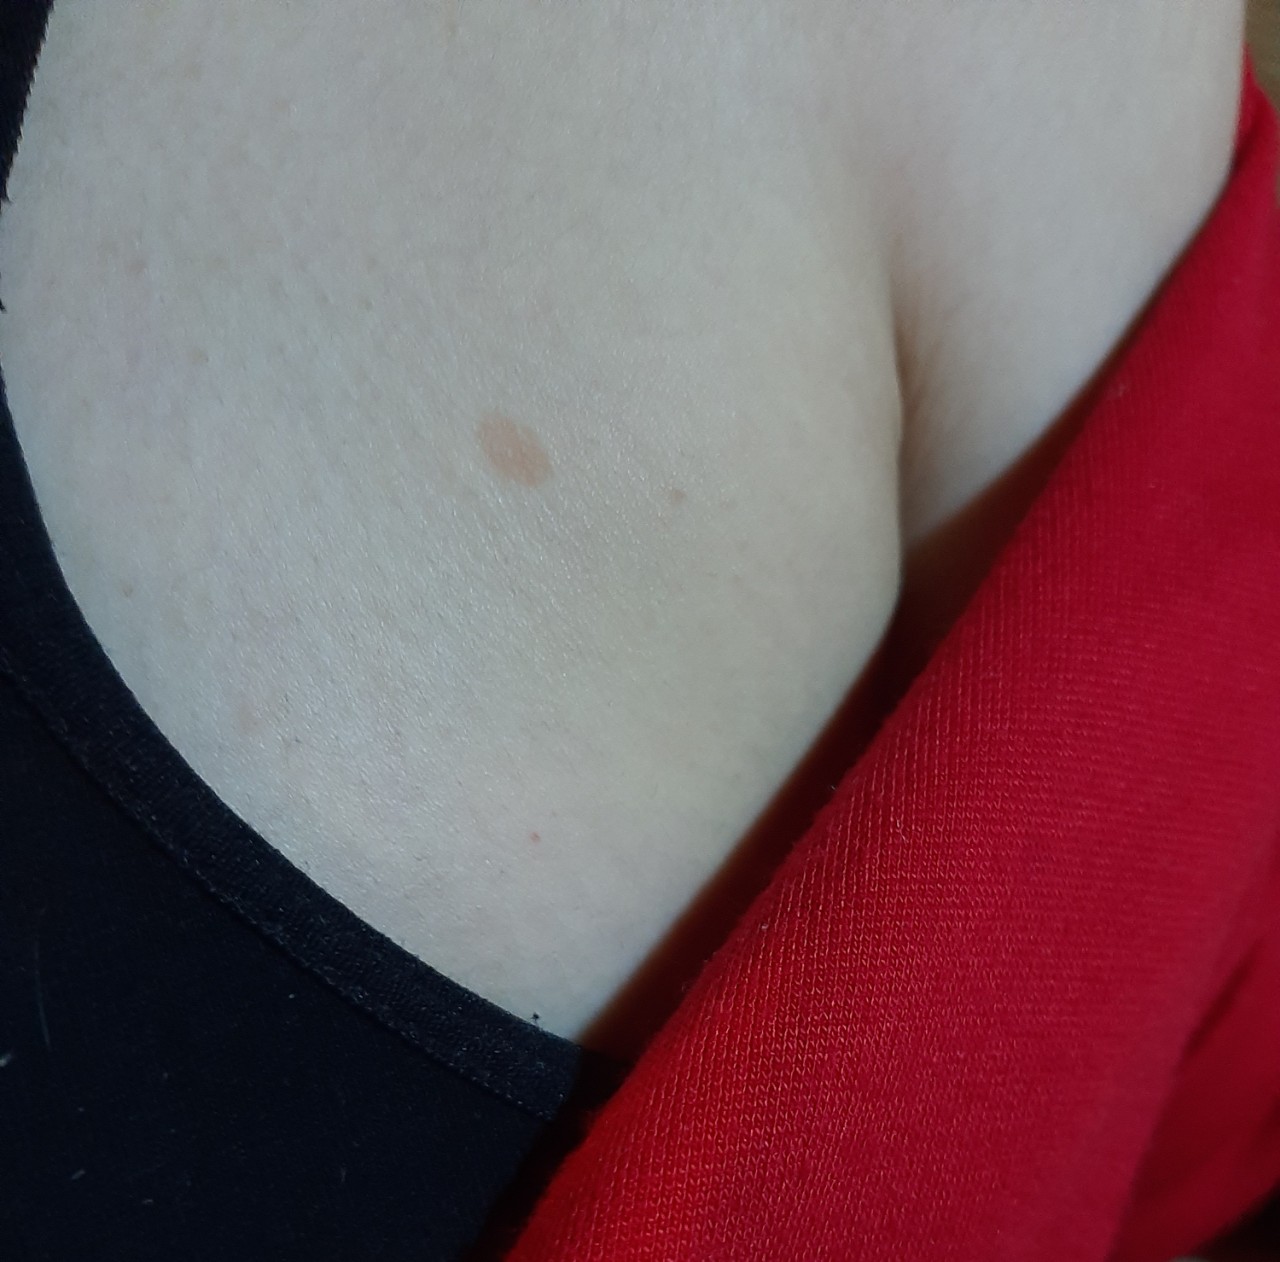 светлые пятна на груди женщин фото 37